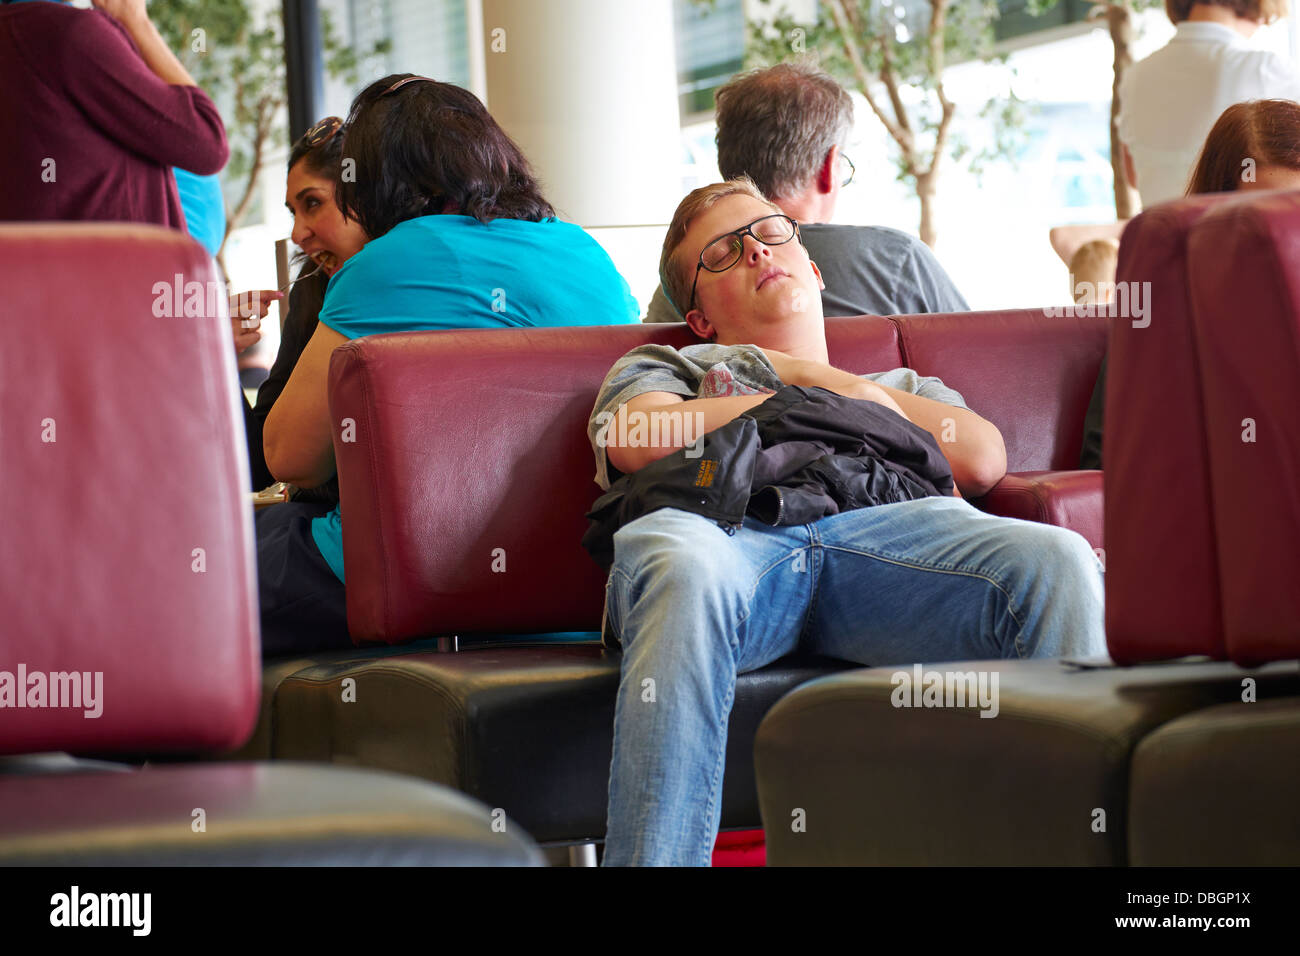 Un uomo dorme nella sala partenze dell'aeroporto. Foto Stock